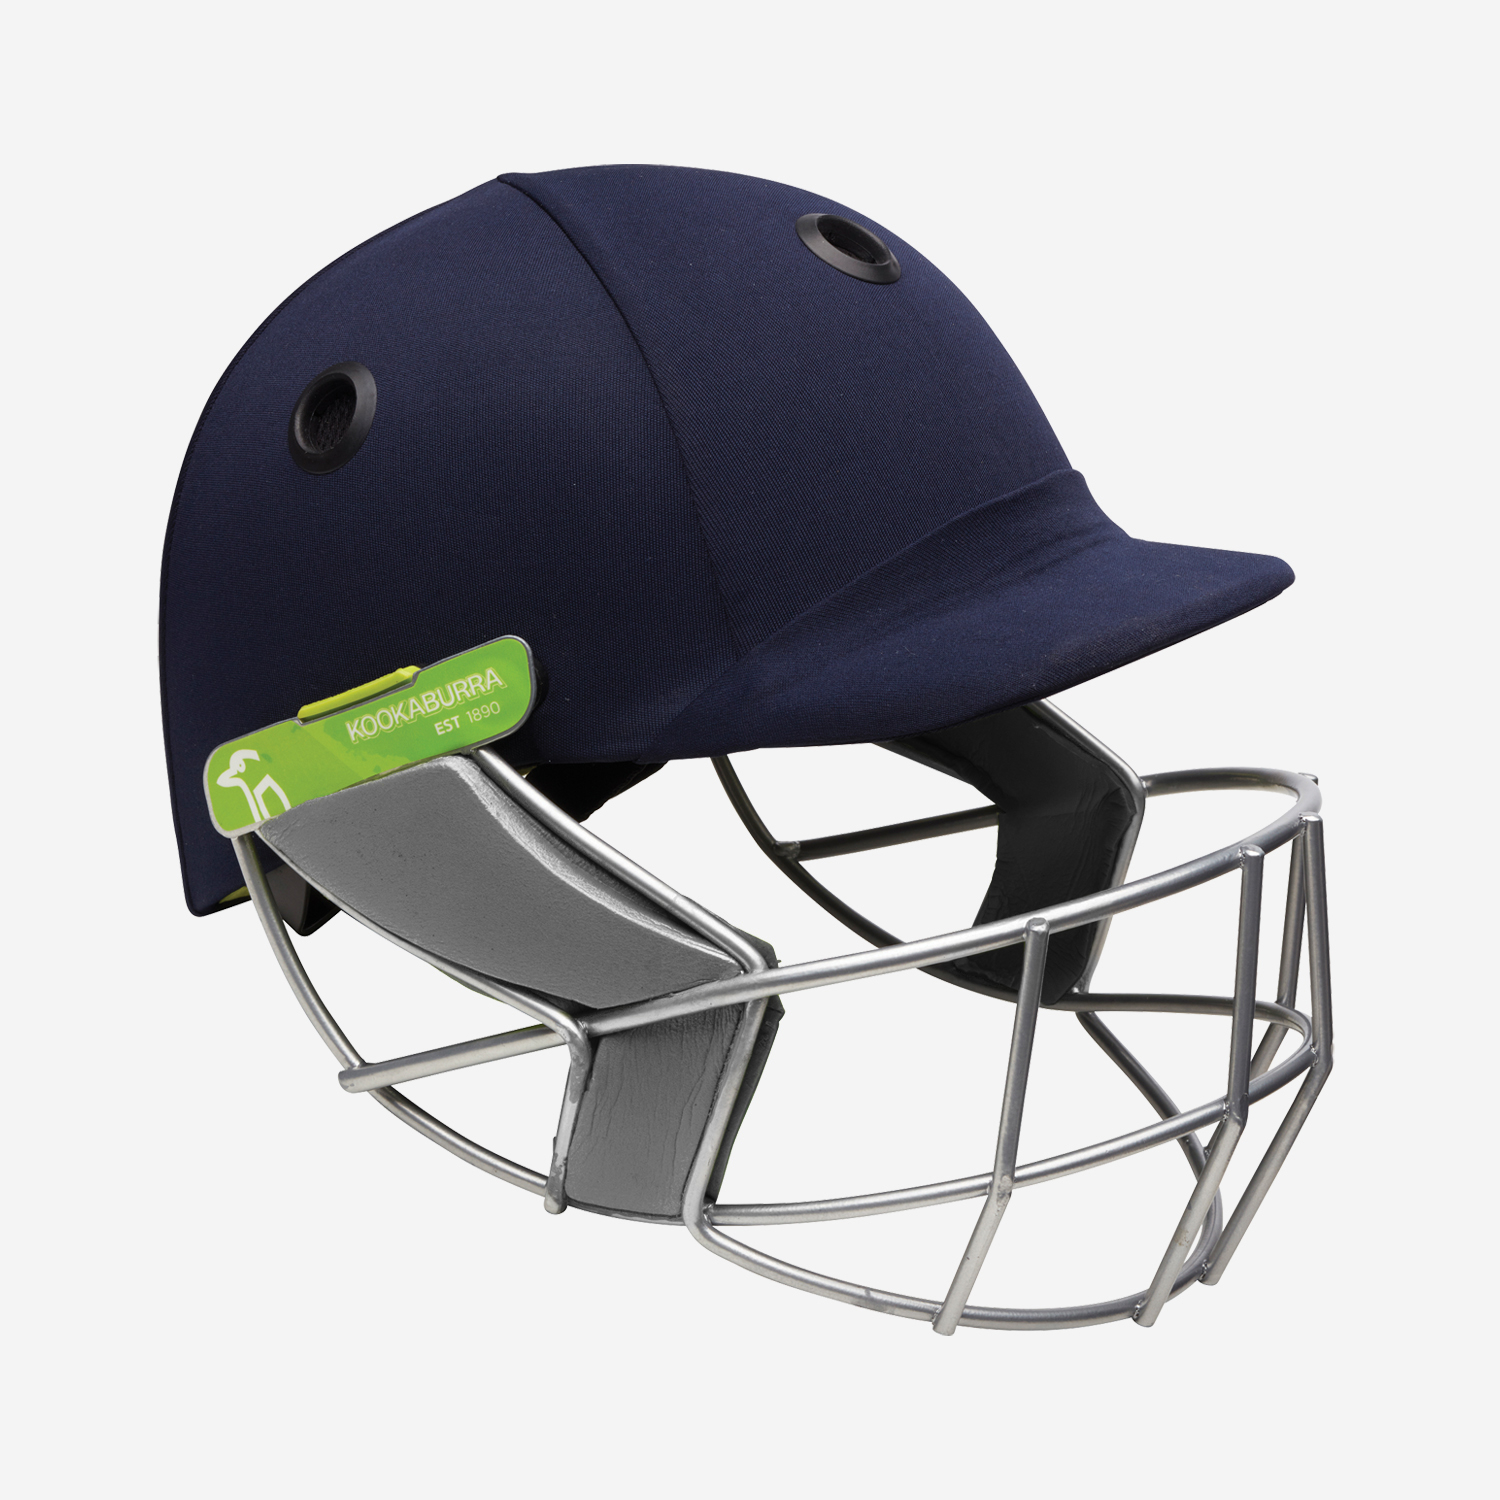 Pro 1500 Cricket Helmet